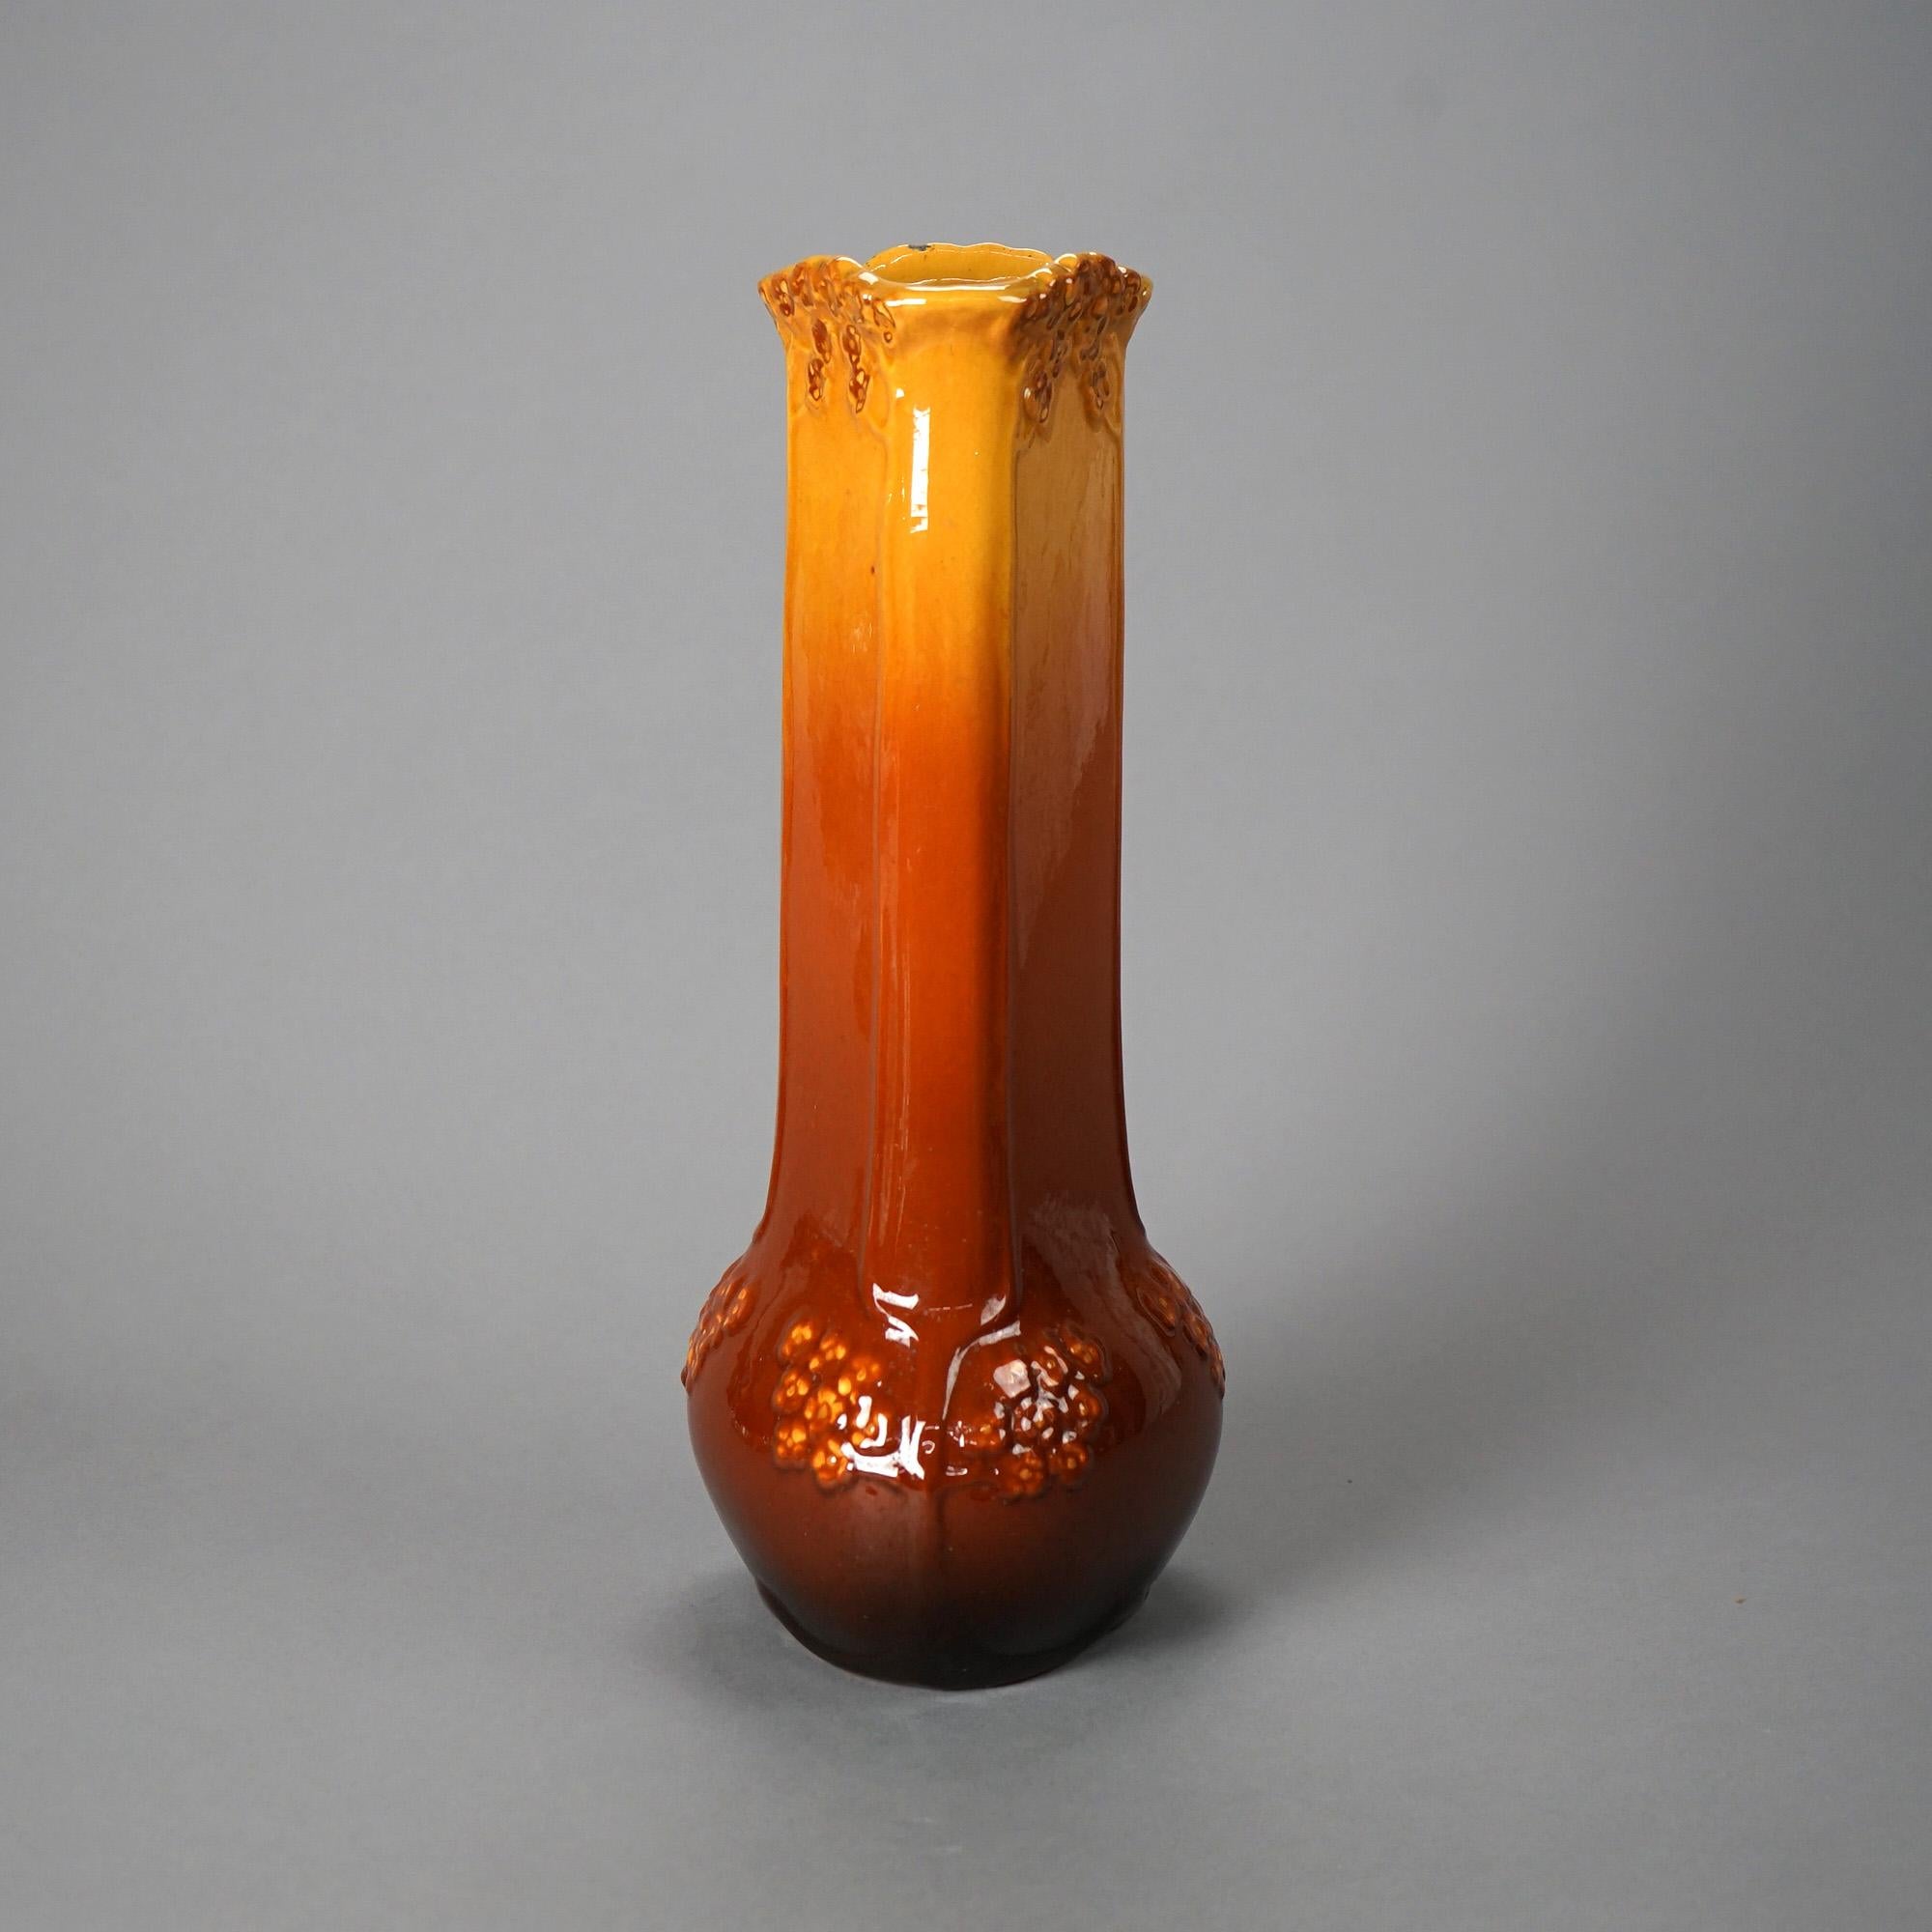 Eine große antike Jugendstil-Vase von Weller bietet Kunst-Keramik-Konstruktion in stilisierten dreieckigen Flasche Form und mit blattförmigen Elementen in Relief, Hersteller auf dem Boden wie fotografiert markiert, c1920

Maße - 15,5 